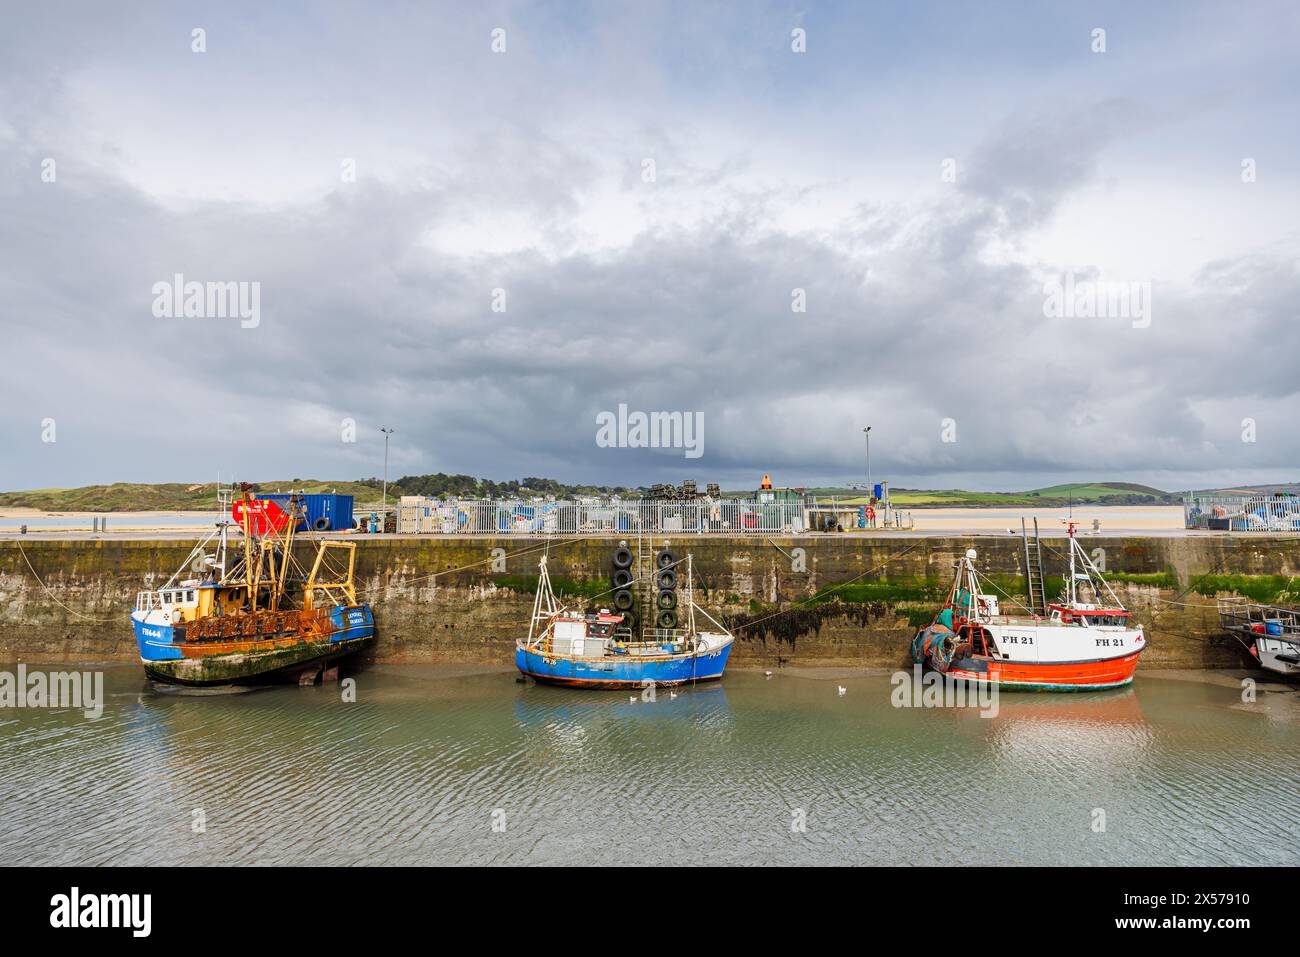 Piccole barche da pesca tradizionali ormeggiate nel porto di Padstow, un grazioso villaggio costiero sulla costa settentrionale della Cornovaglia, in Inghilterra Foto Stock